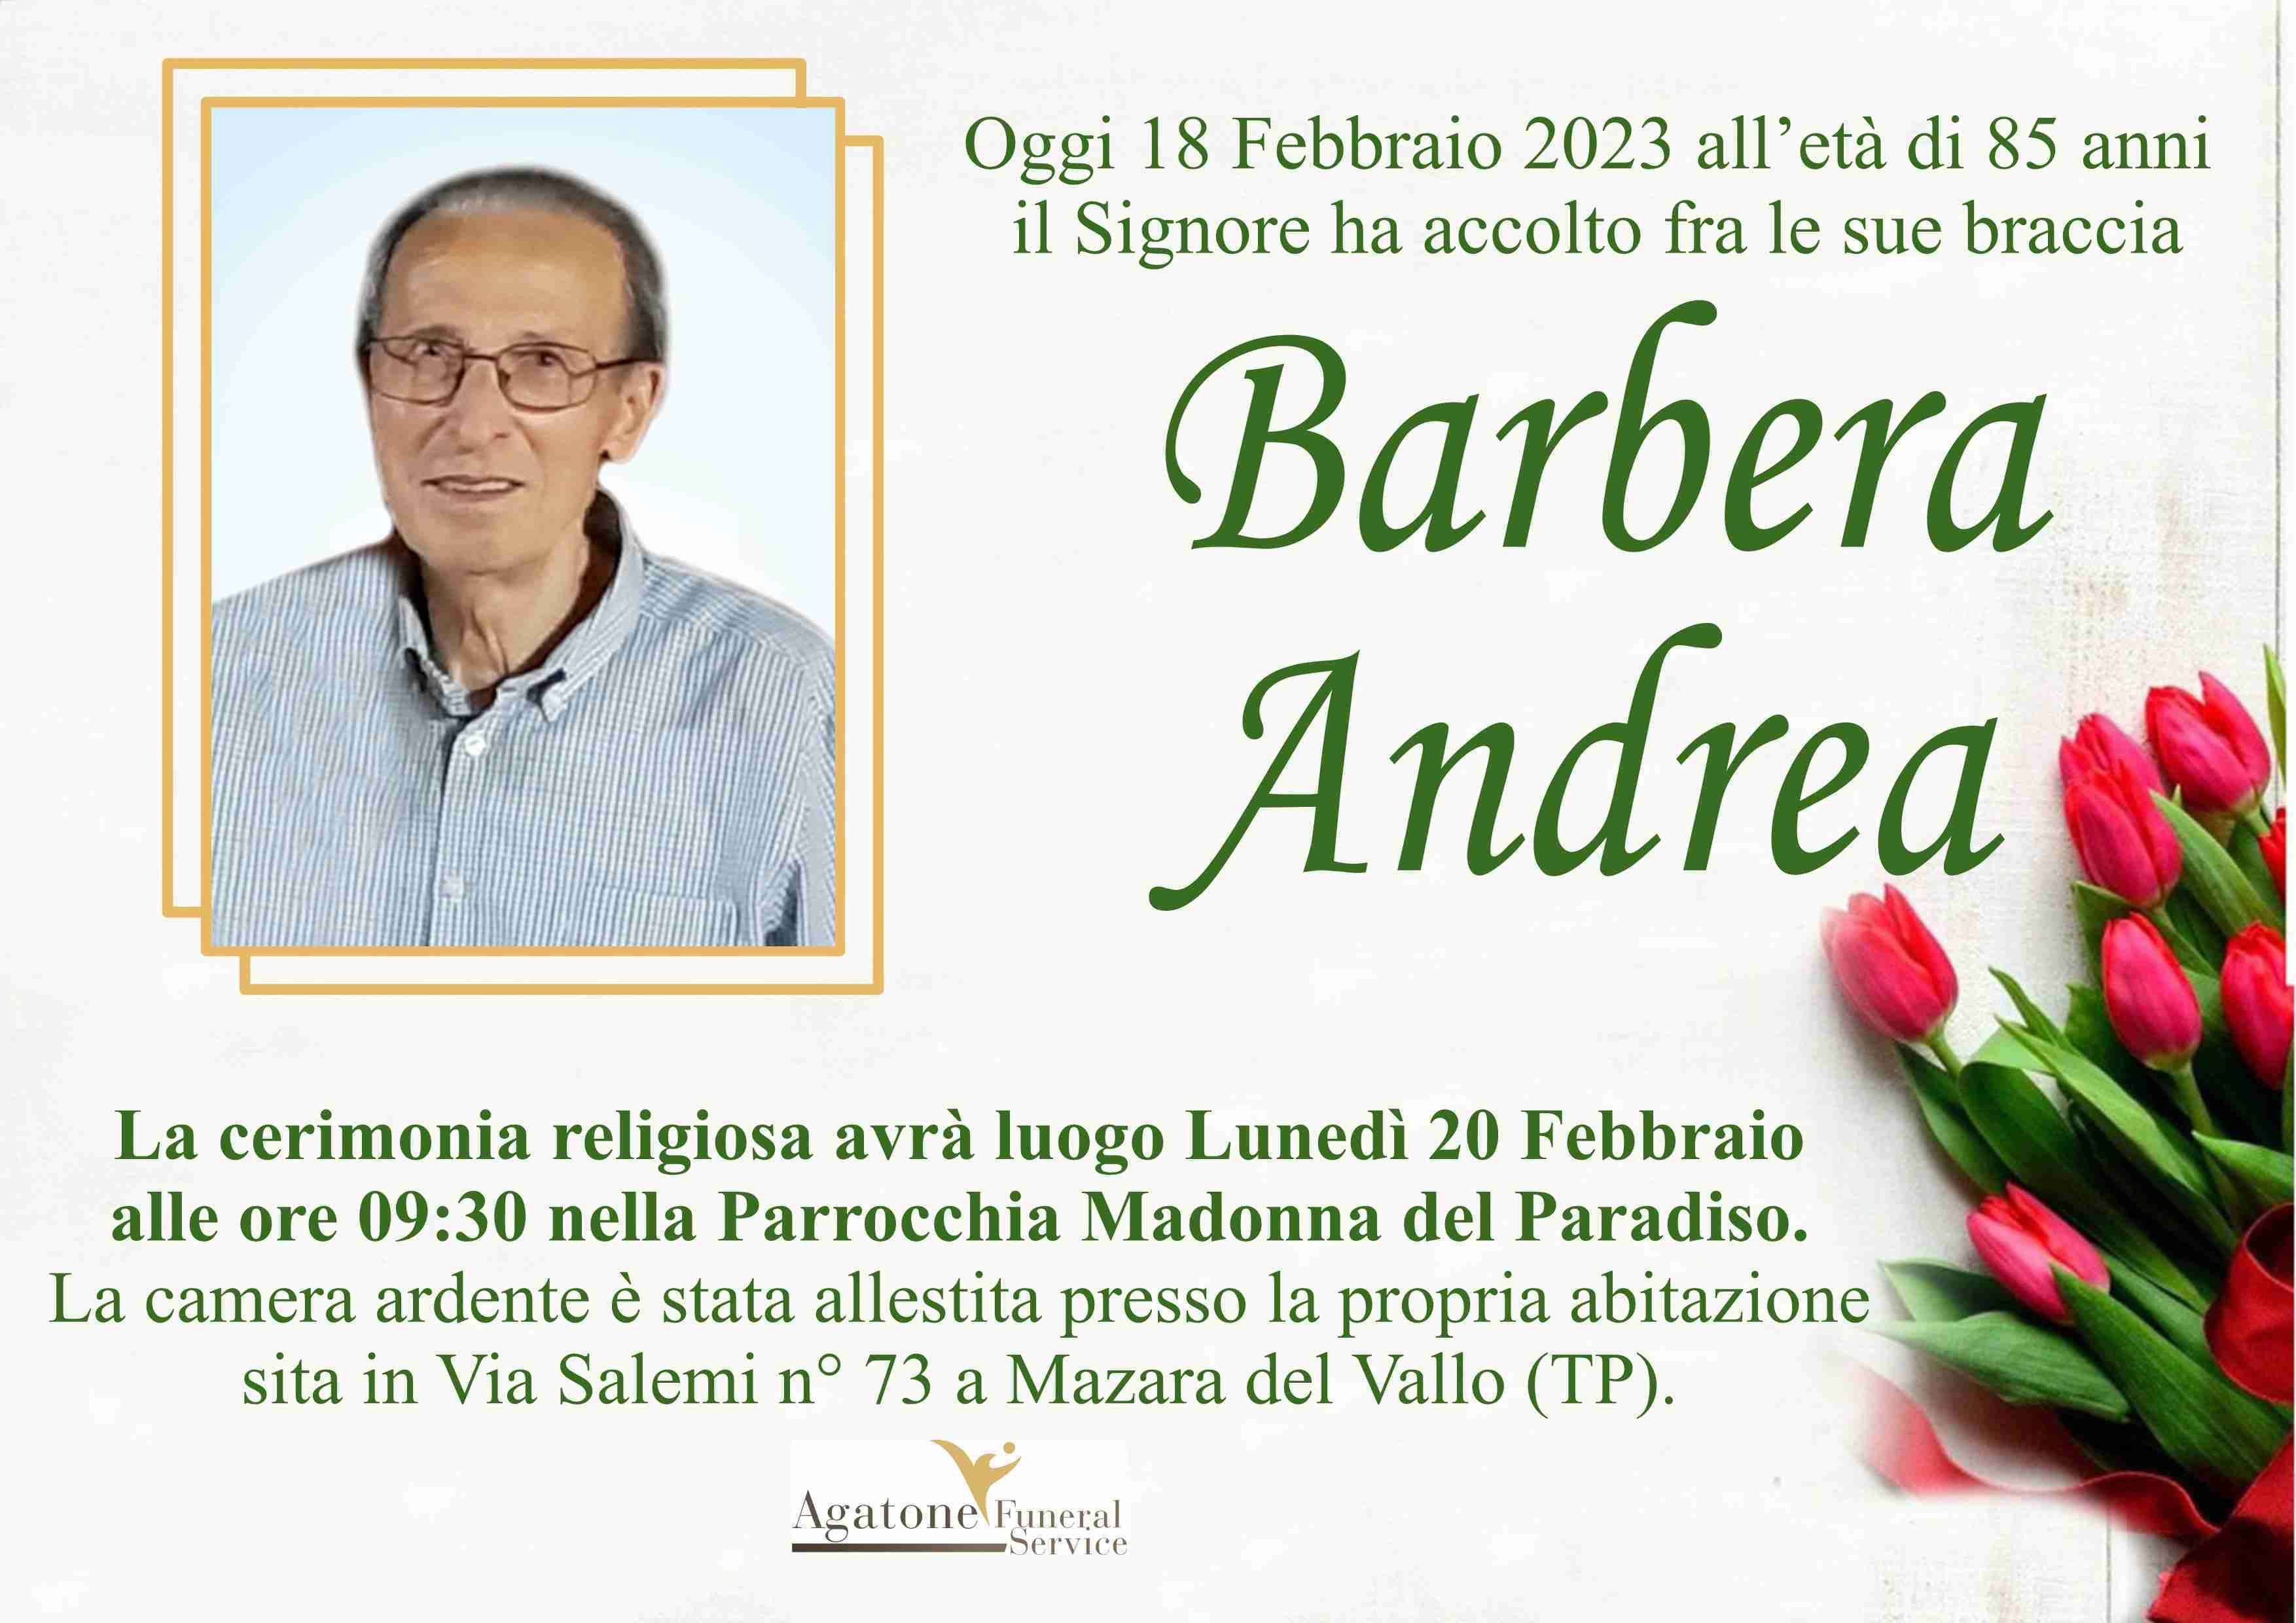 Andrea Barbera